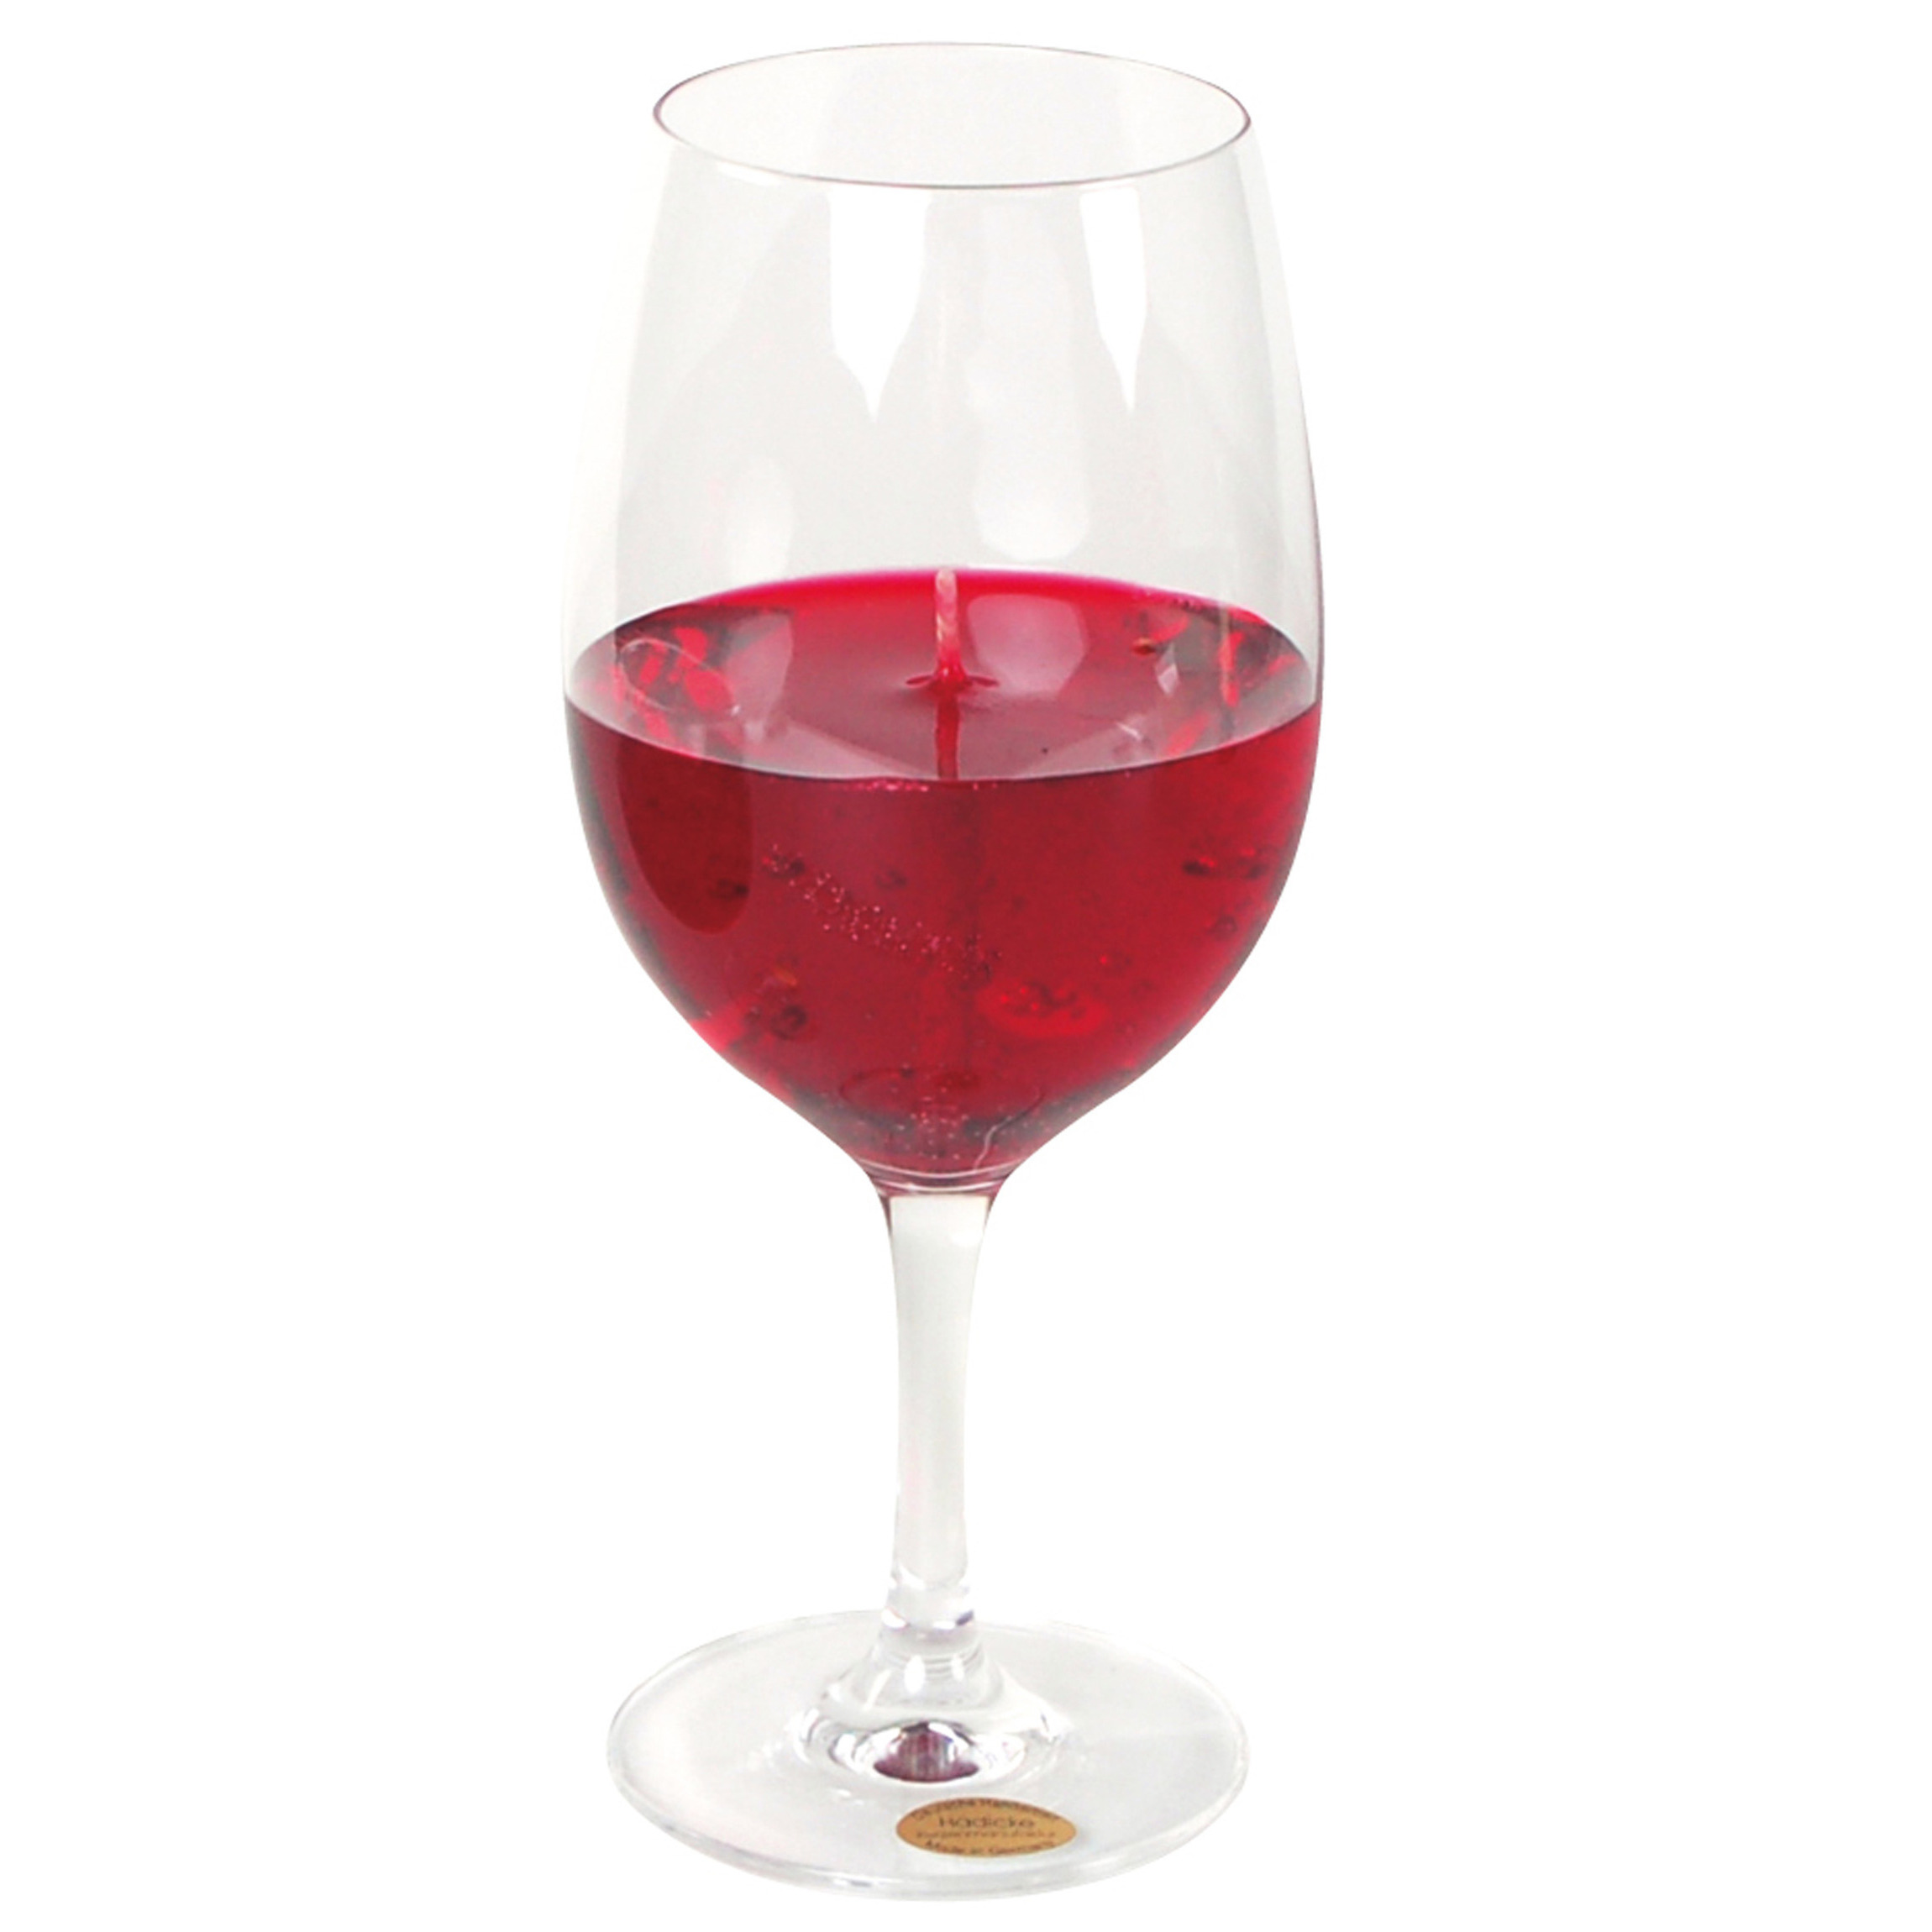 Wijnglas gadget/kado Wijnkaars - geurkaars - H21 cm - rode wijn